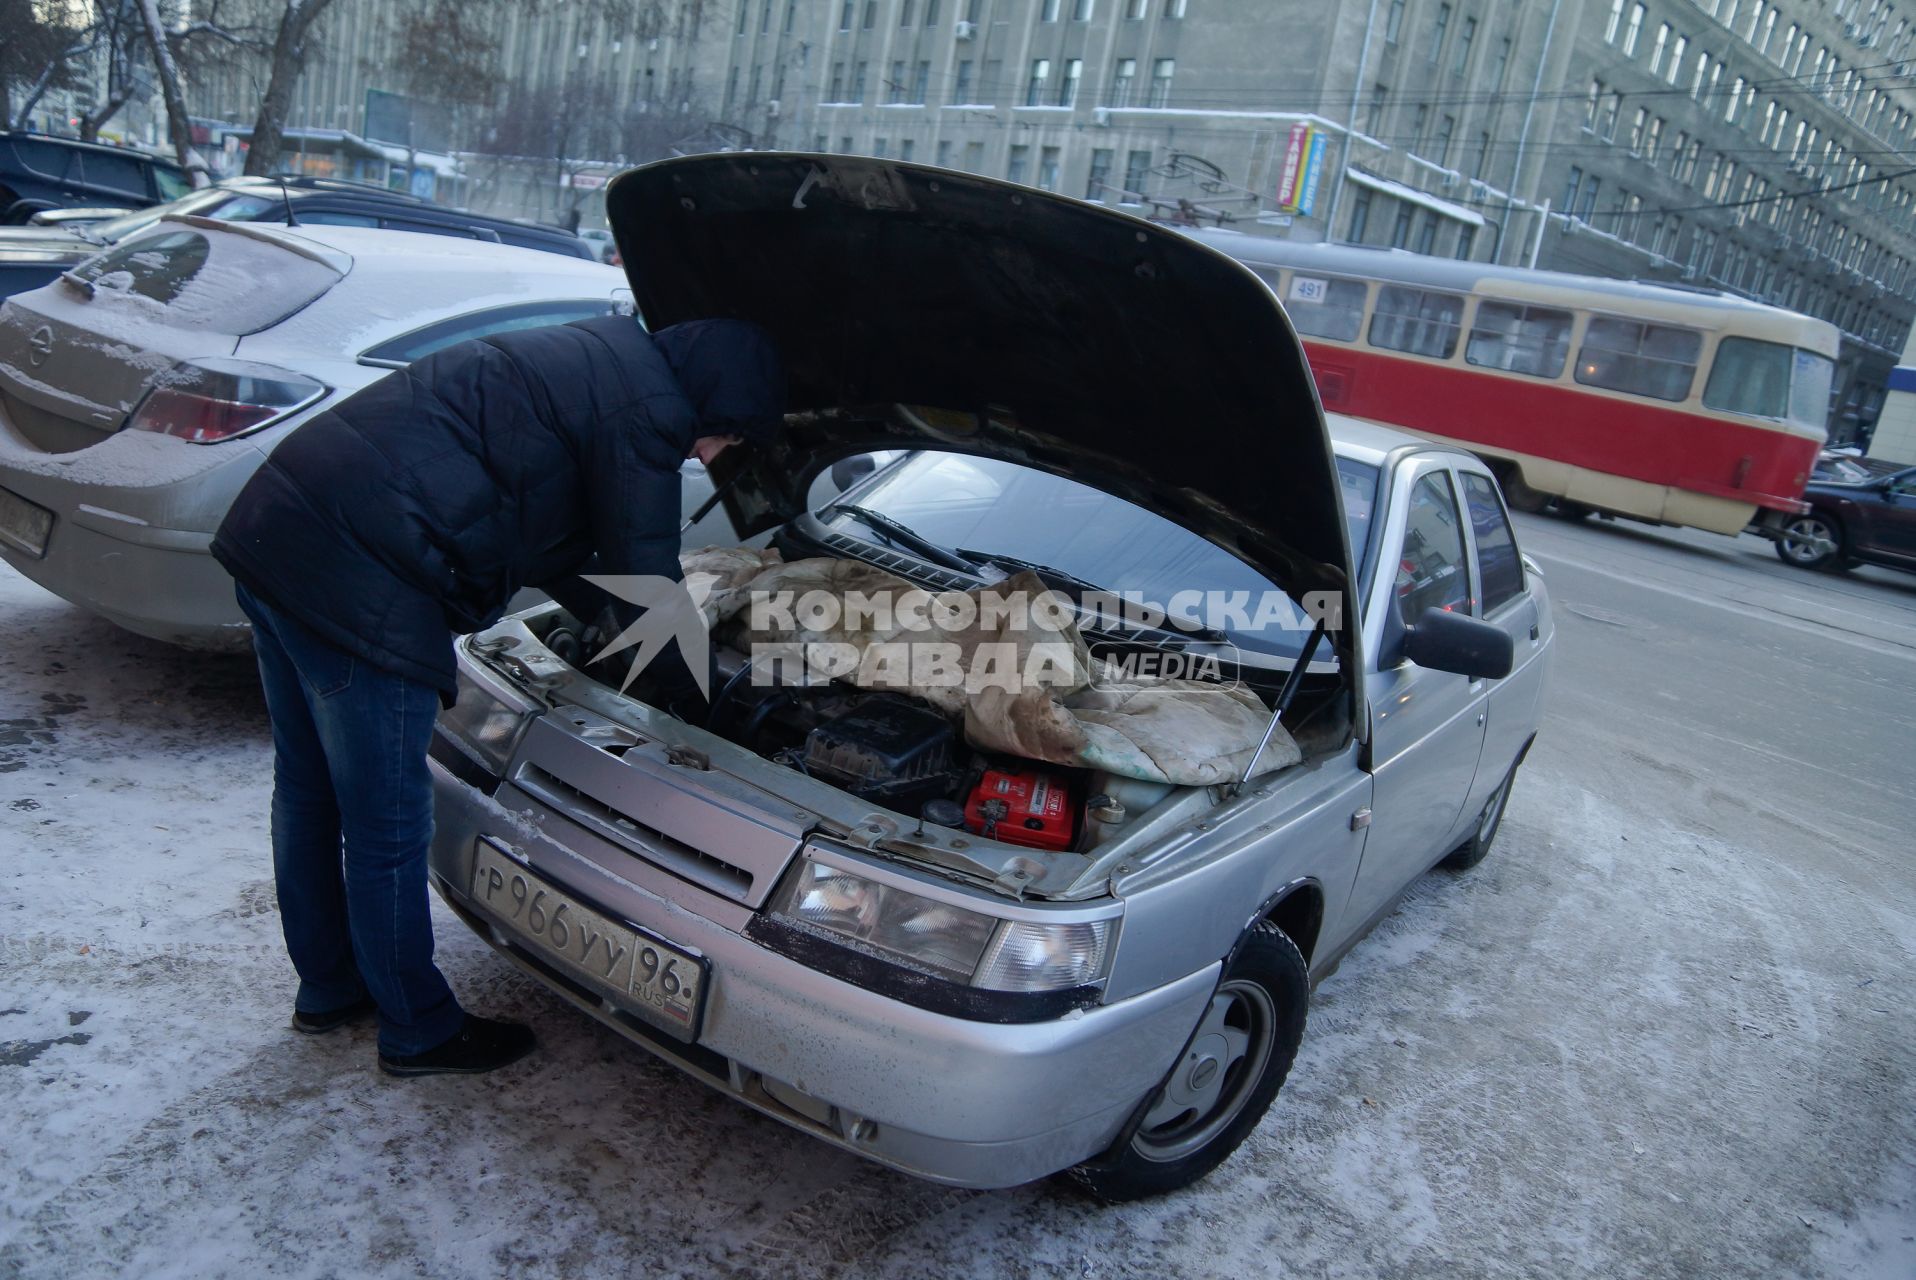 водитель согревает двигатель автомобиля, во время сильных морозов в Екатеринбурге